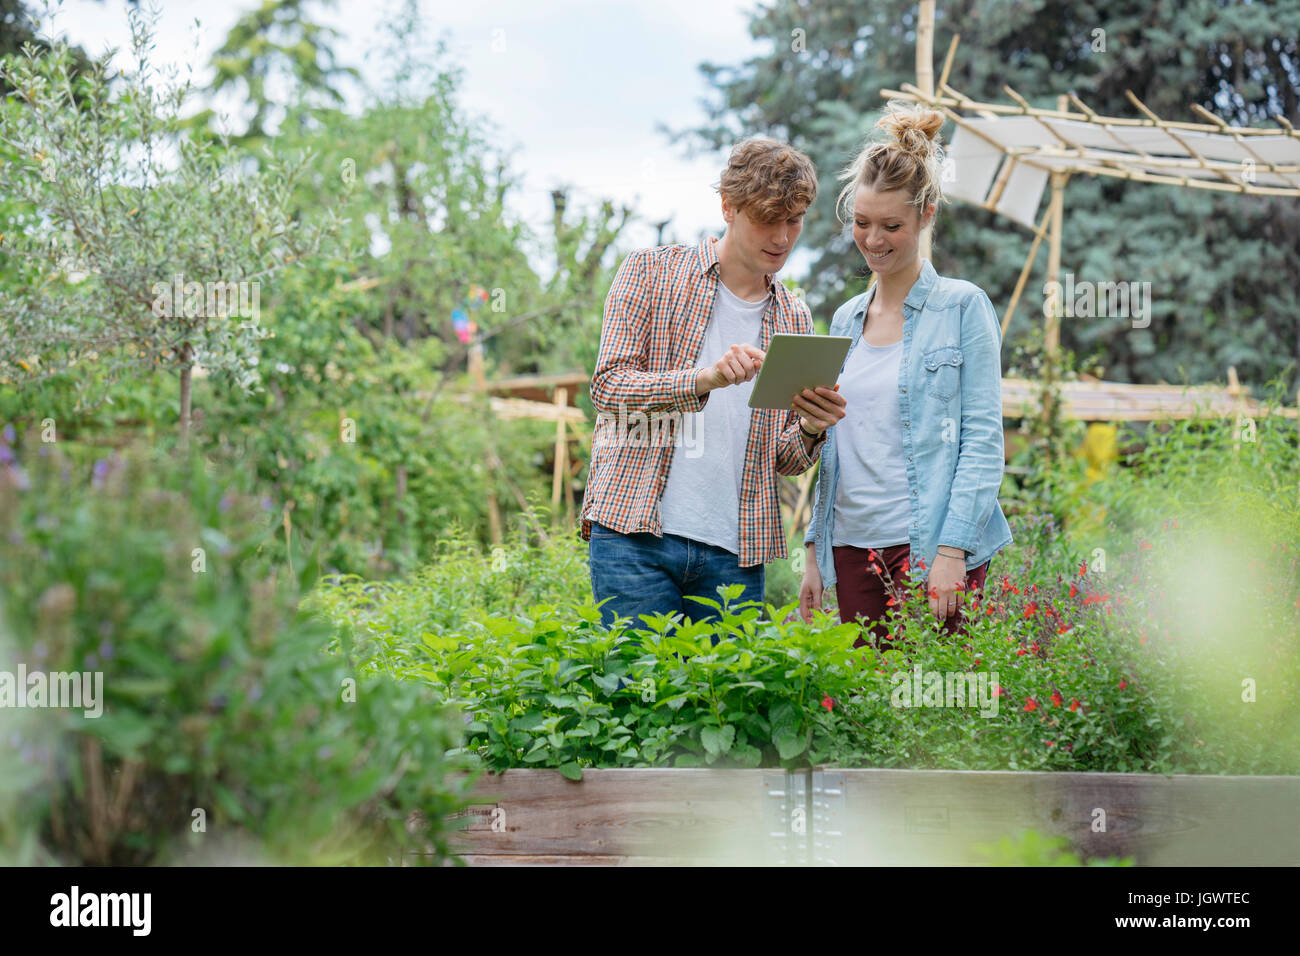 Jeune homme et femme en milieu urbain, le jardin des plantes photographier using digital tablet Banque D'Images